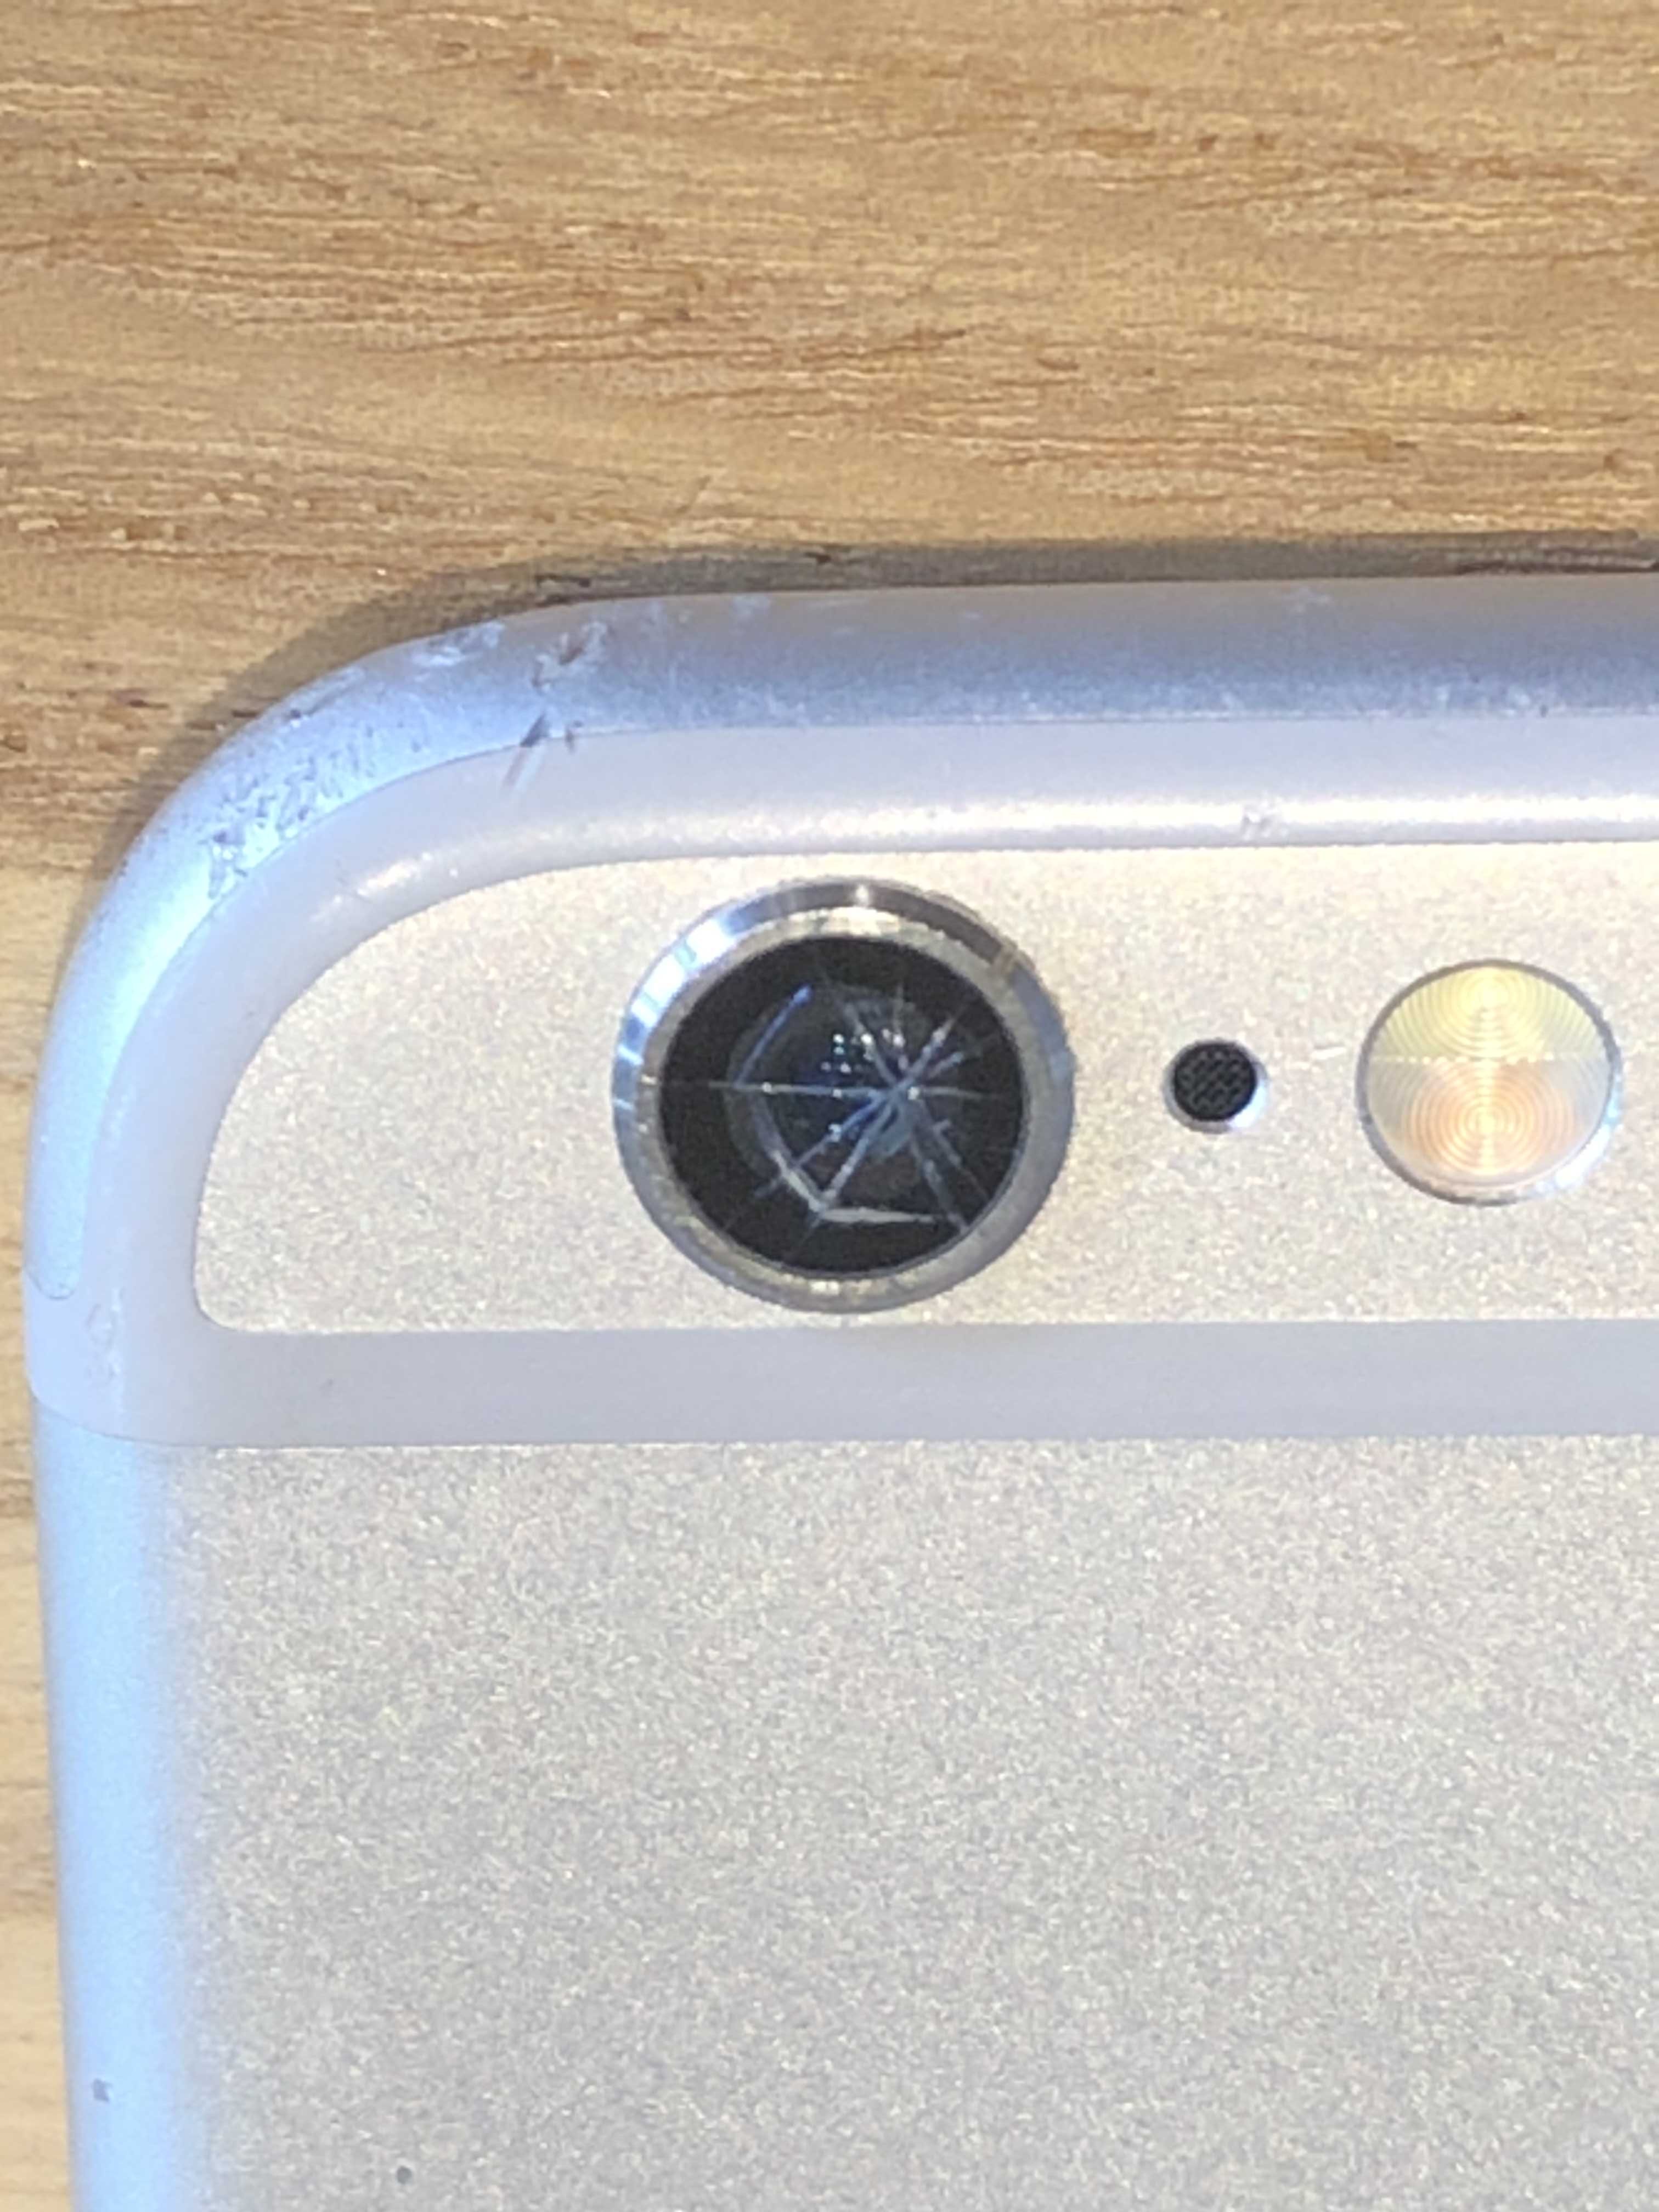 Iphone６s カメラガラス割れ 保土ヶ谷区 カメラのガラスが割れて光が反射する Iphone修理のクイック